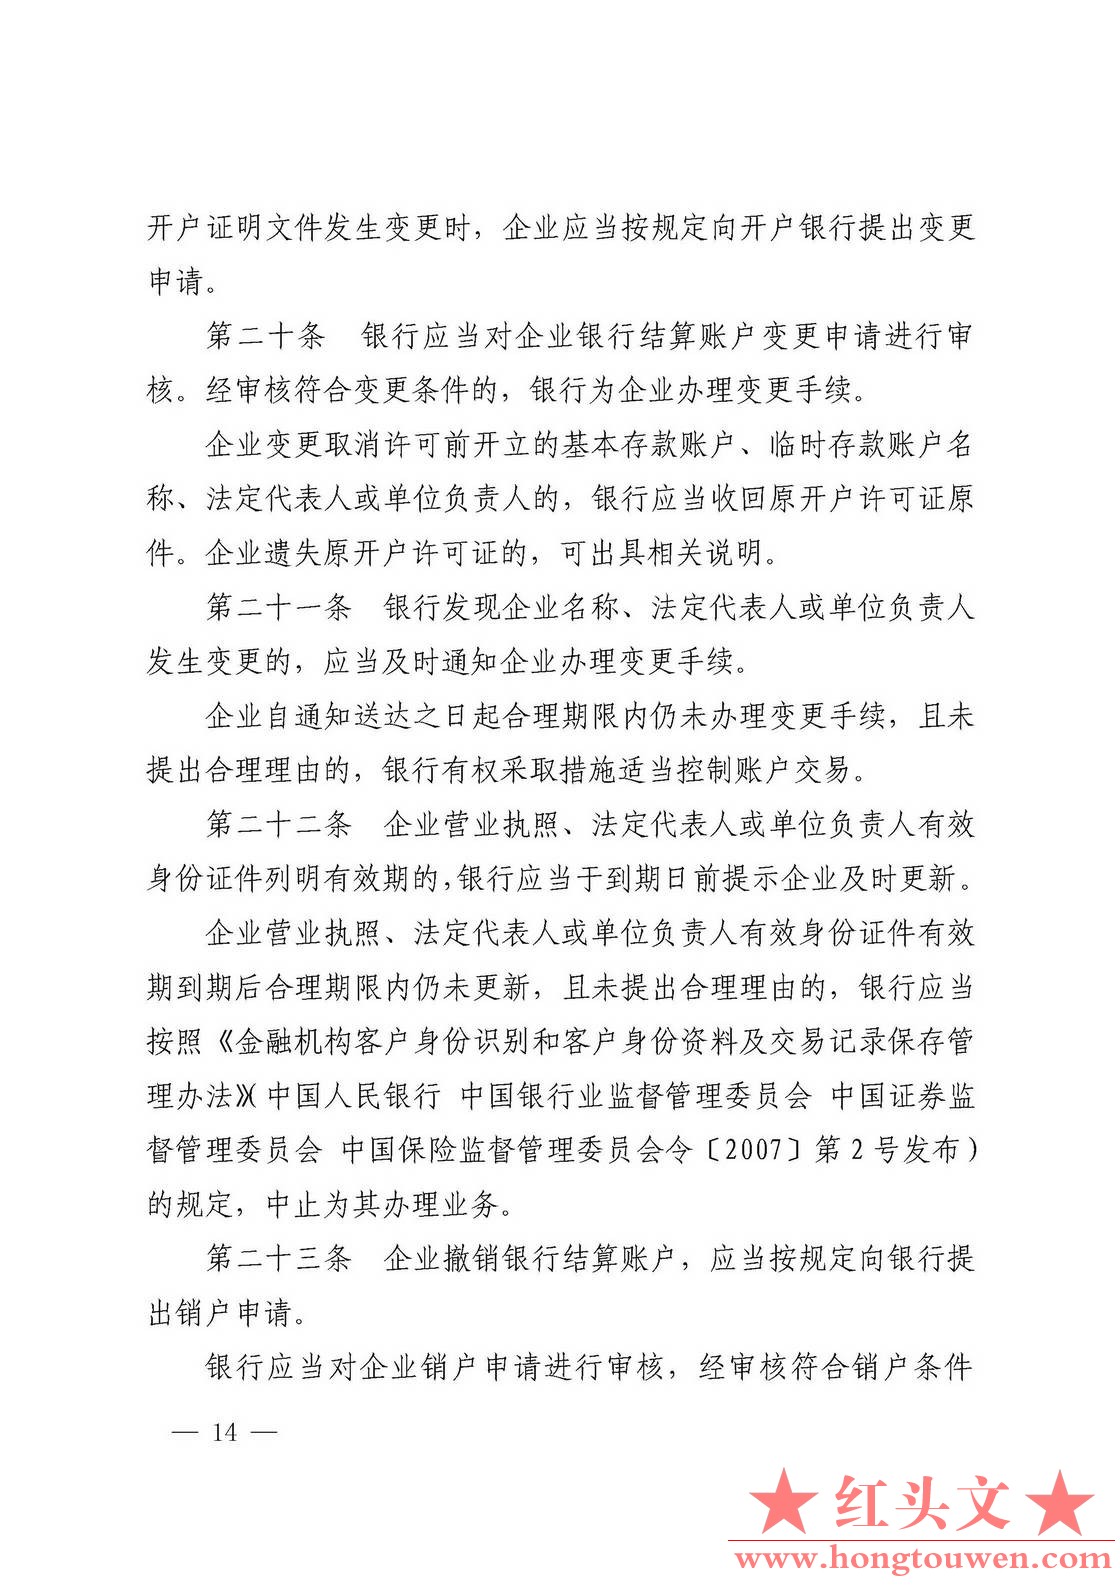 银发[2019]41号-中国人民银行关于取消企业银行账户许可的通知_页面_14.jpg.jpg